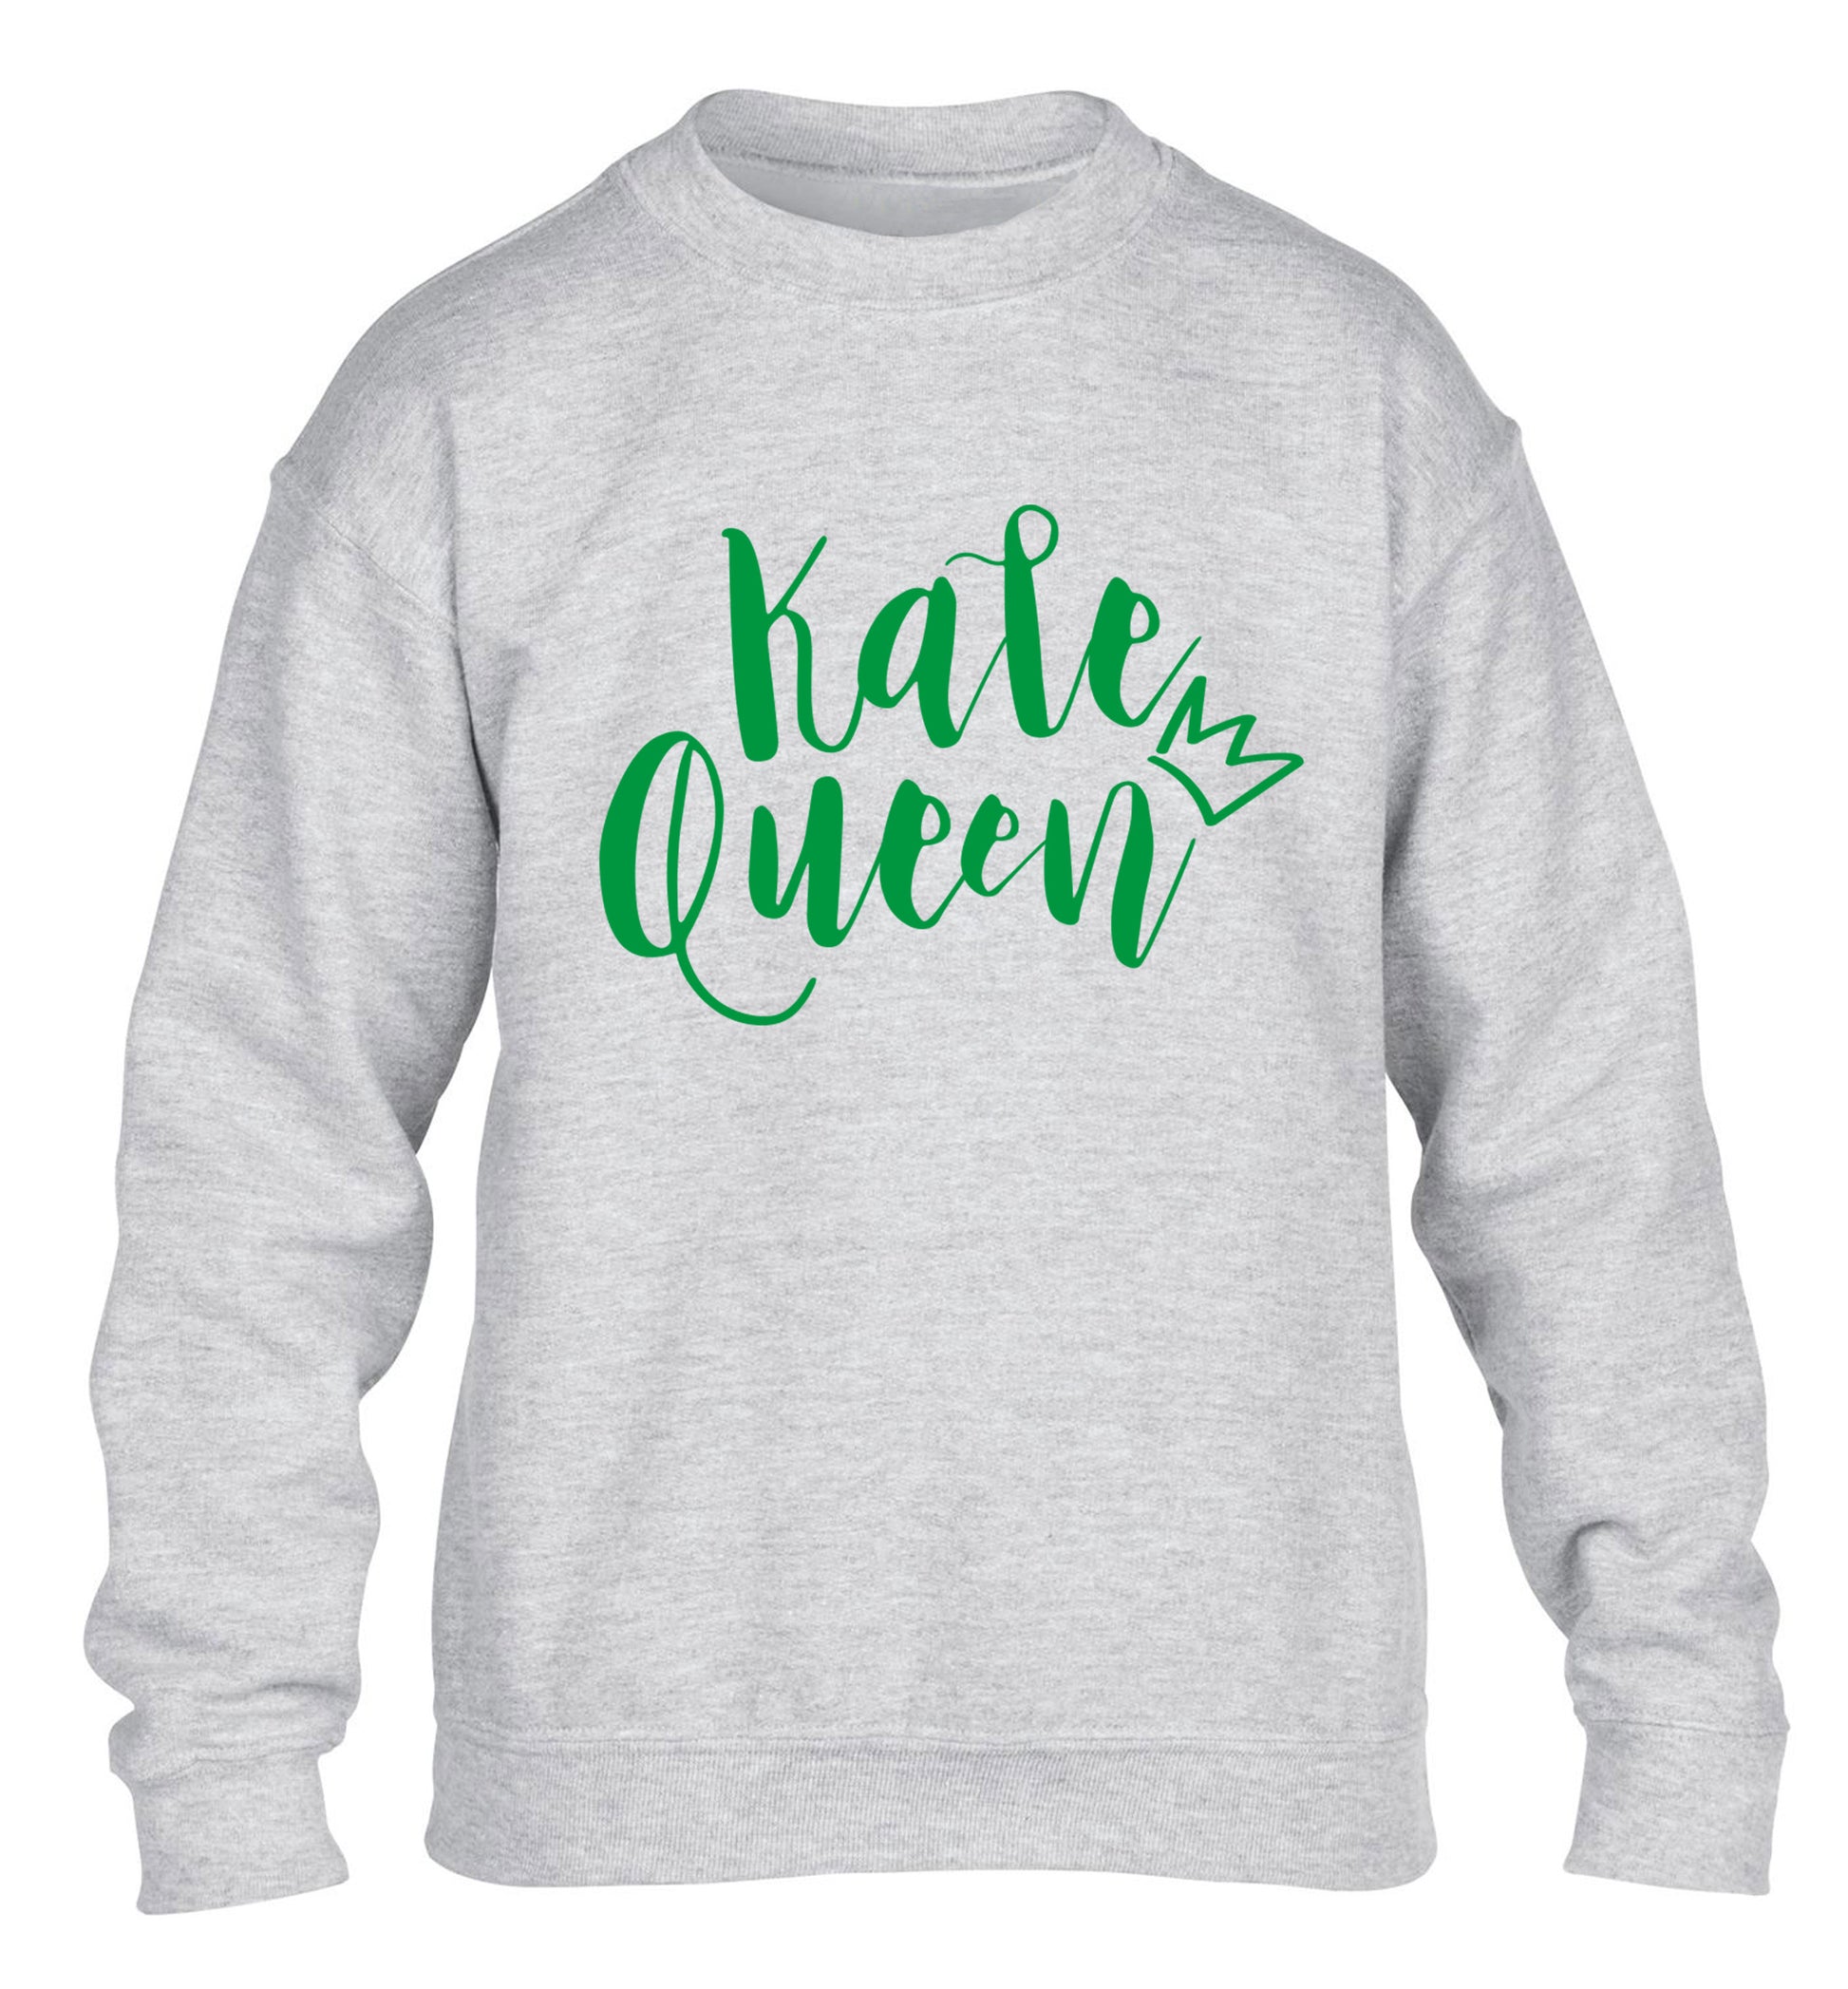 Kale Queen children's grey  sweater 12-14 Years